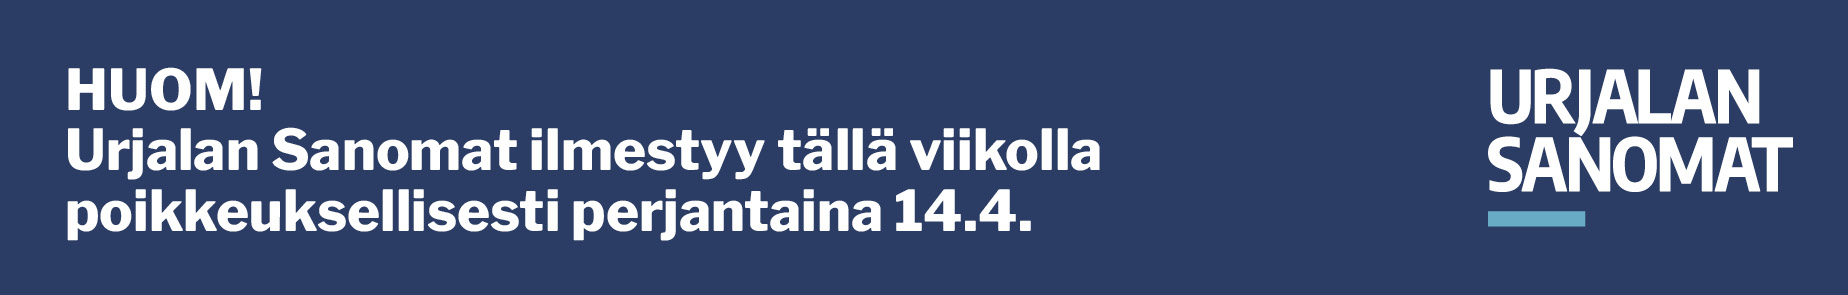 Huhdin kyläyhdistyksen Kävelyreitti Sutonen palkittiin – Pirkan Helmi  valitsi kuusi palkittavaa 186 hankkeen joukosta - Urjalan Sanomat